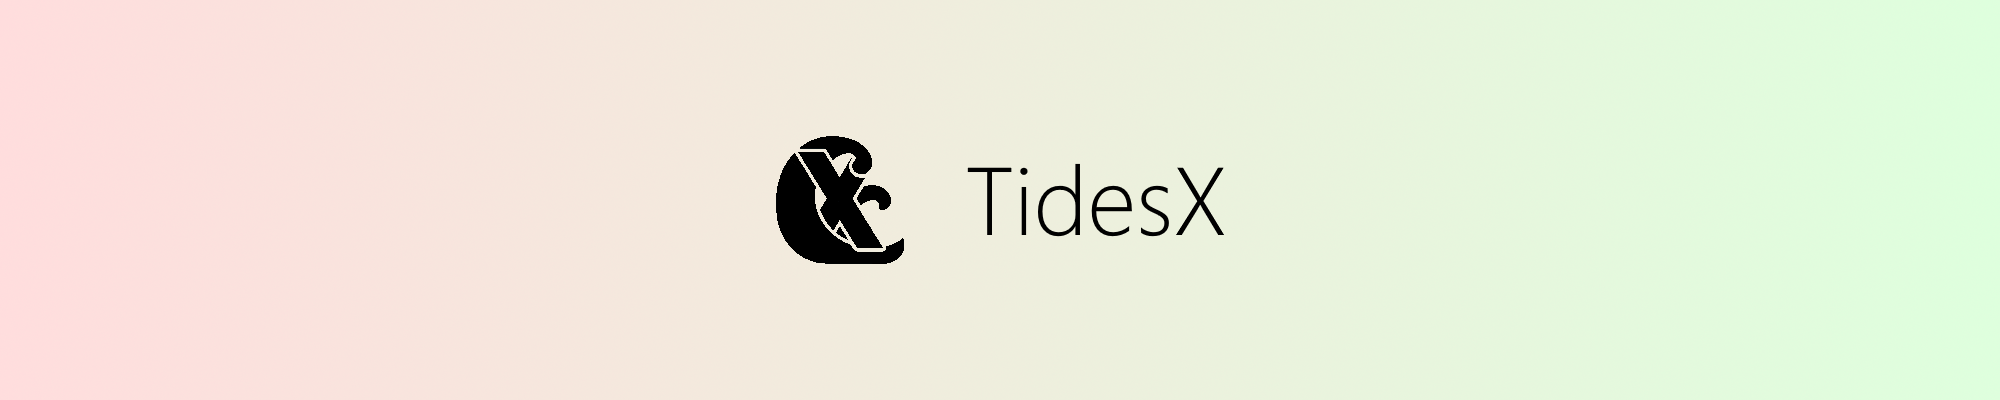 TidesX Banner